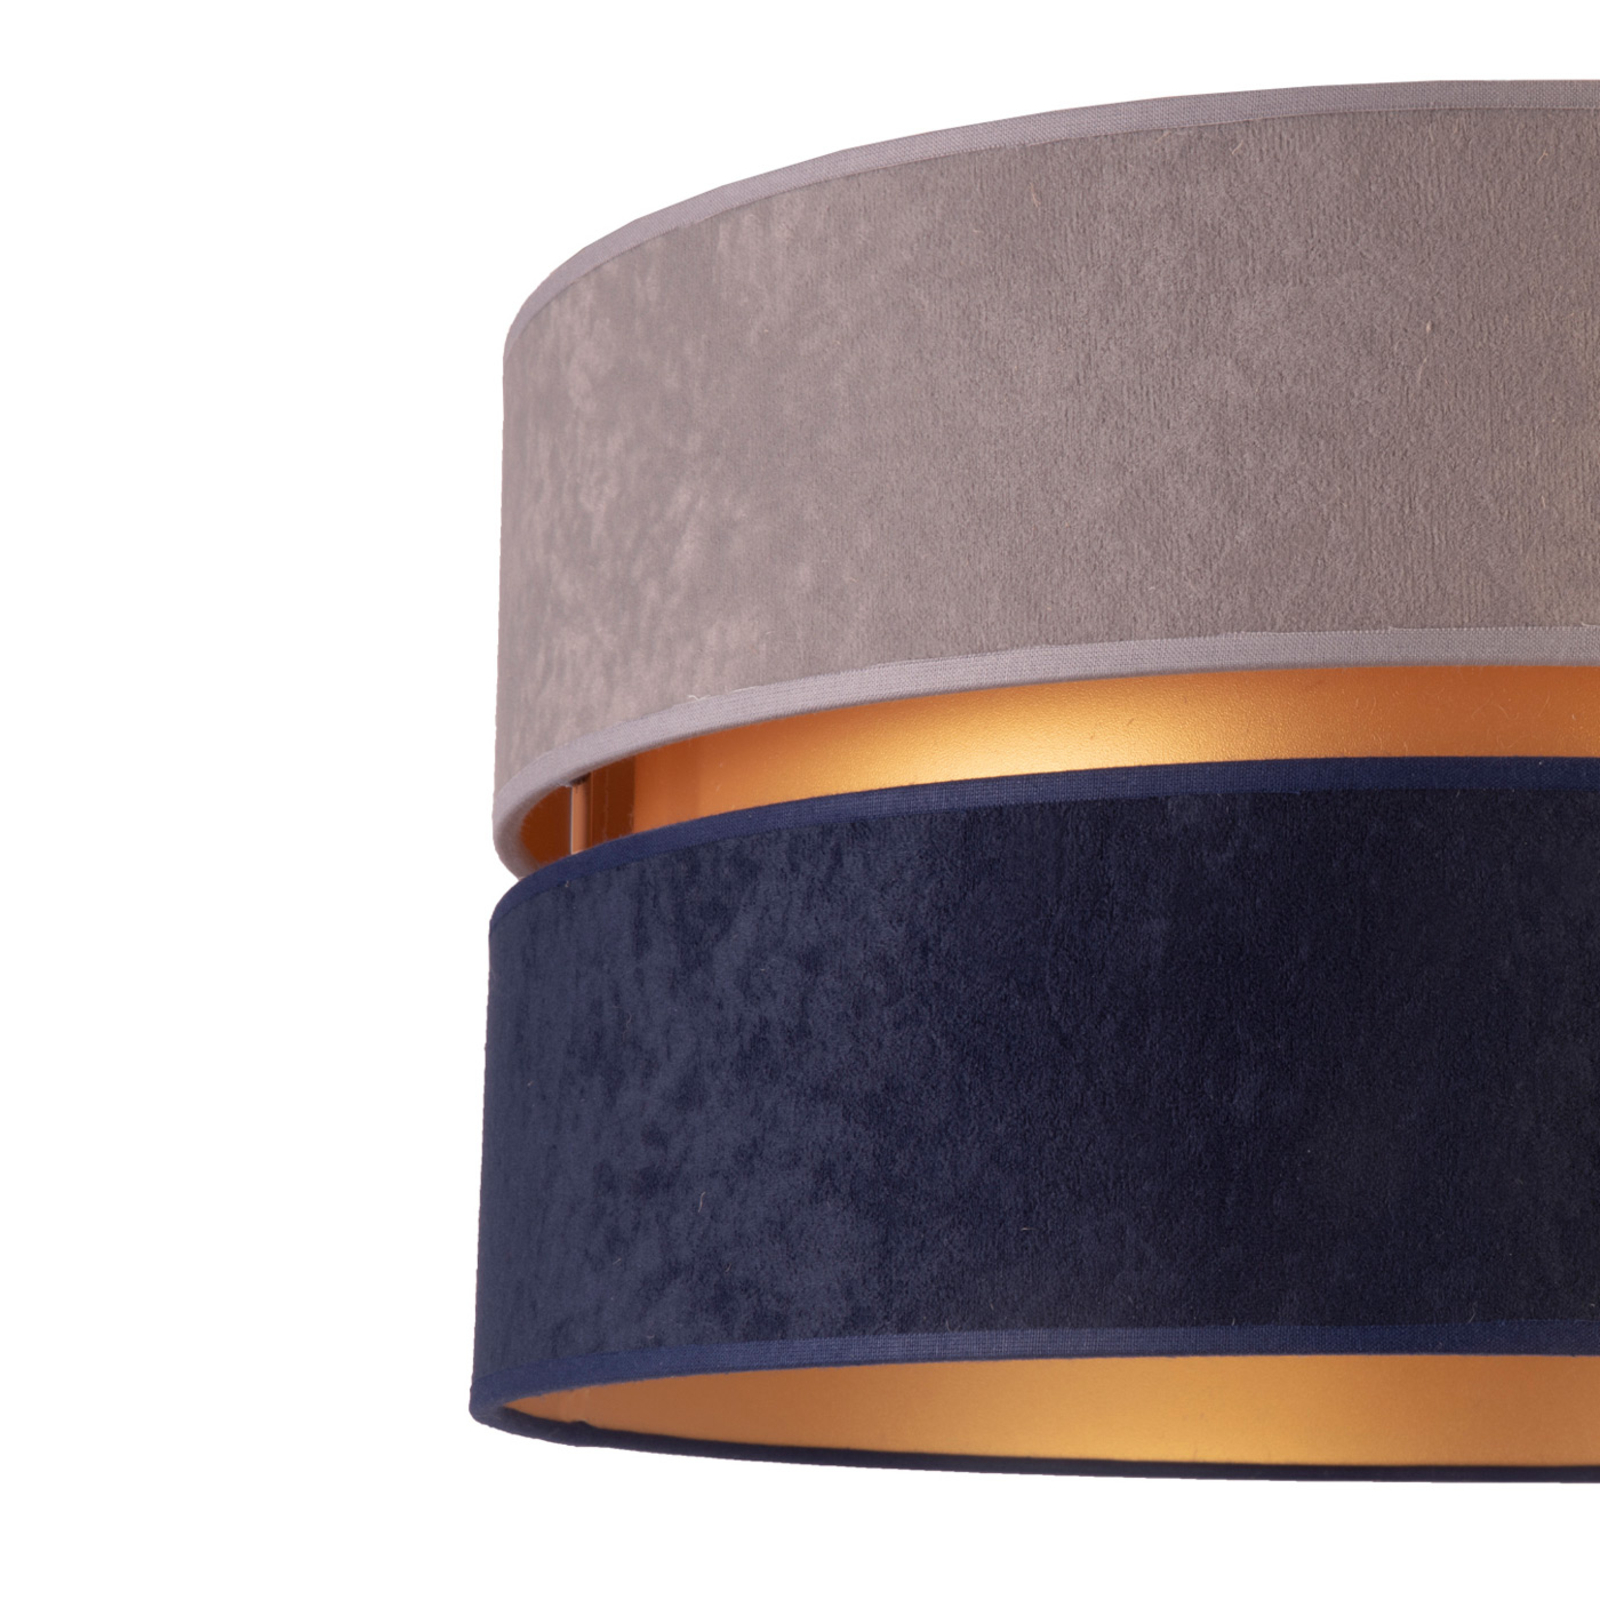 Vegglampe Duo, marineblå/grå/gull, Ø25cm